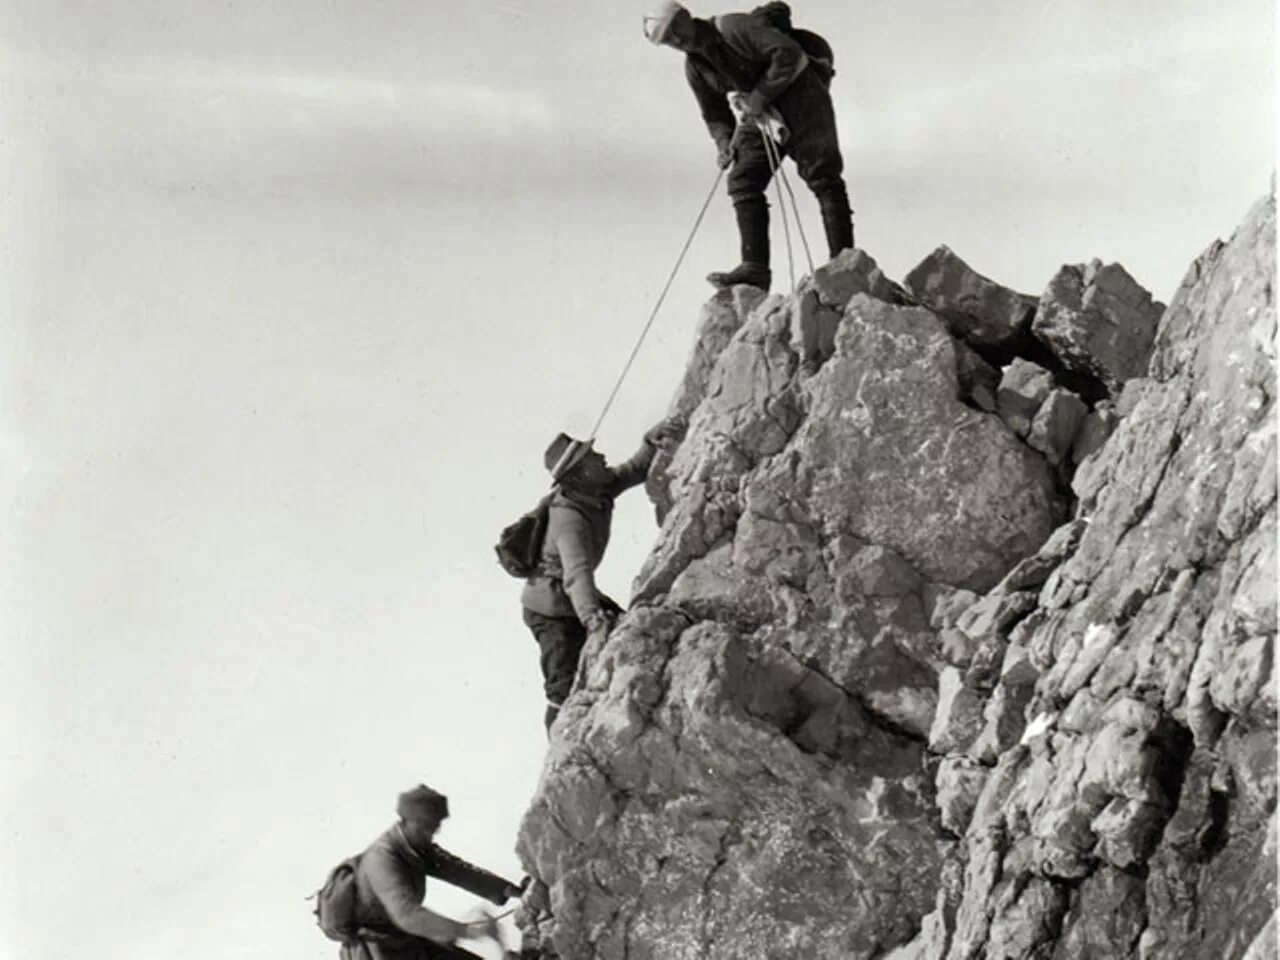 Тони Курц альпинист. Высоцкий альпинист. Советские альпинисты. Советские скалолазы. Видите третьего альпиниста старость